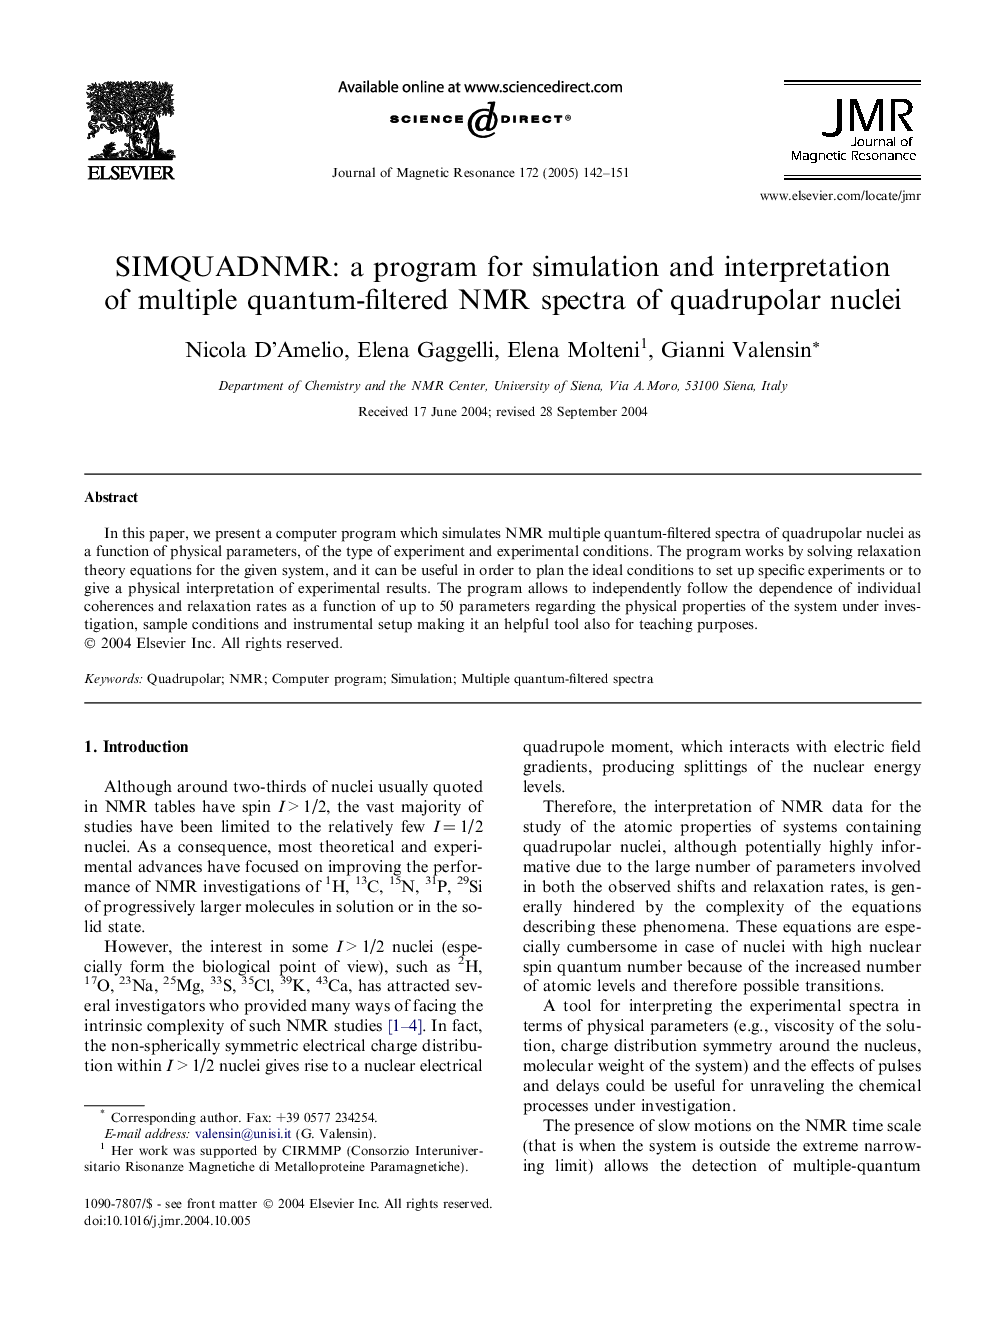 SIMQUADNMR: a program for simulation and interpretation of multiple quantum-filtered NMR spectra of quadrupolar nuclei